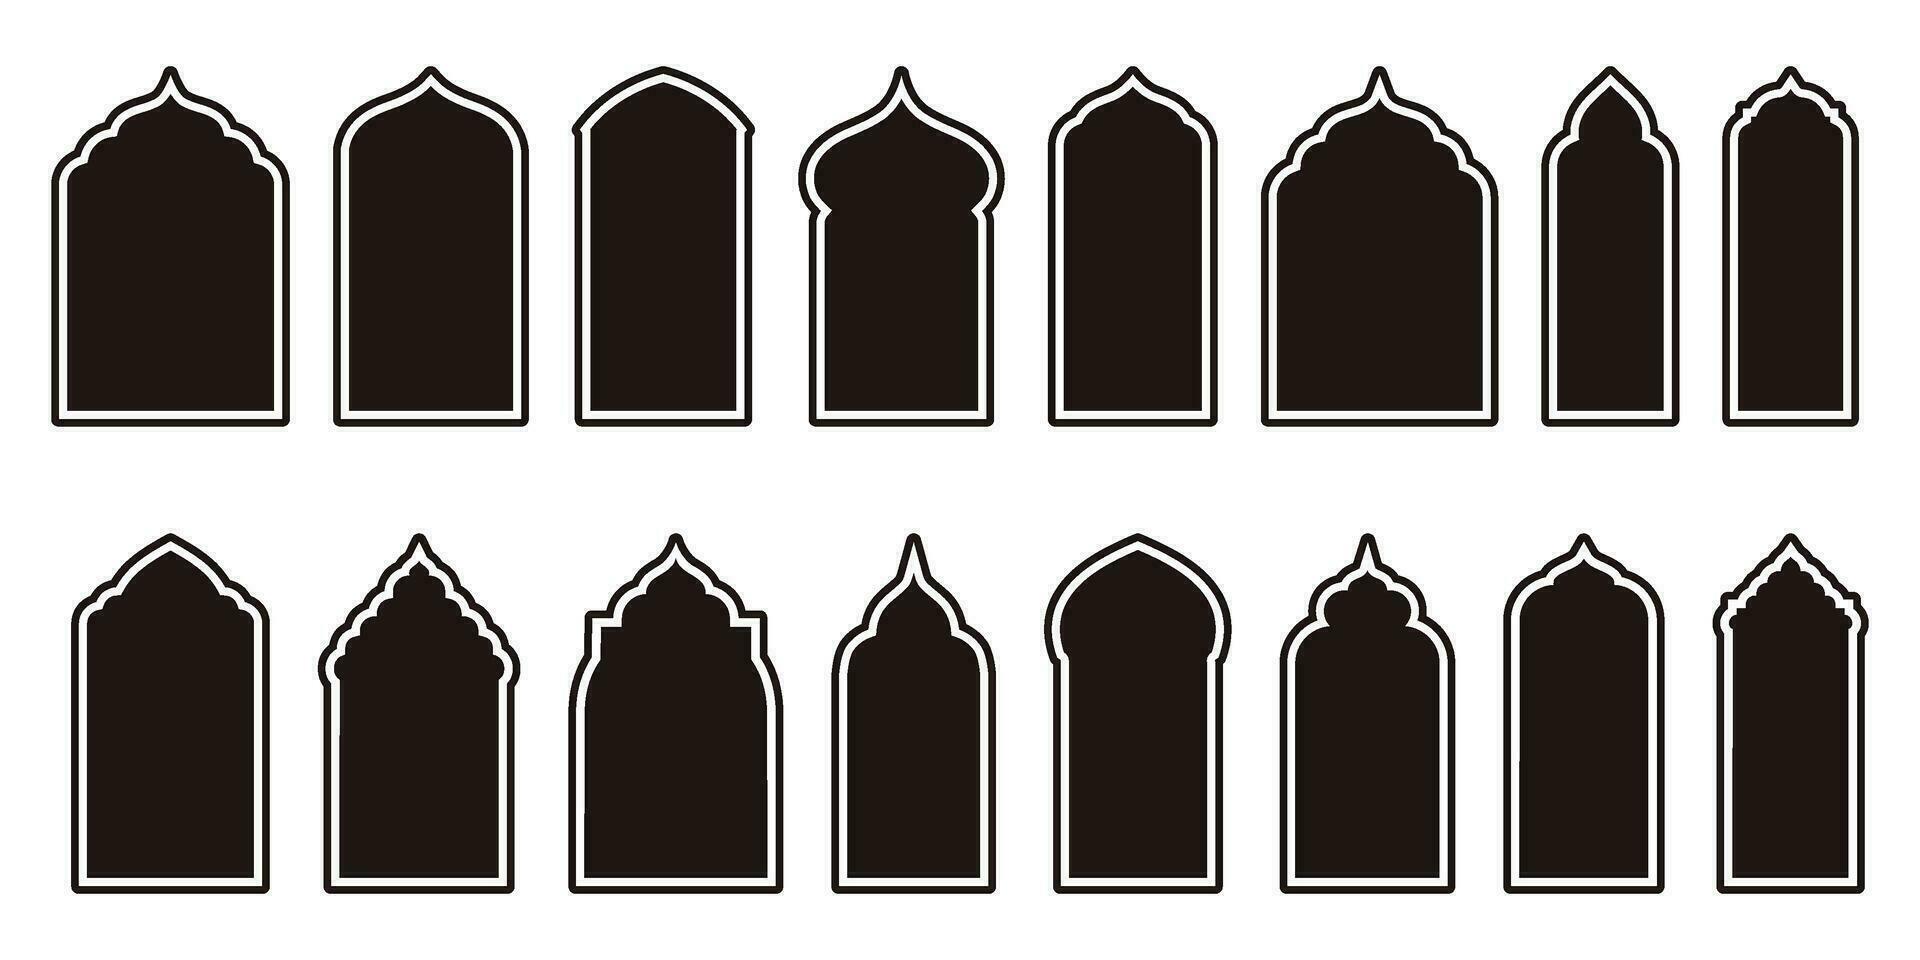 versátil islámico vector formas destacando ventana y puerta arcos árabe marcos conjunto con Ramadán kareem silueta iconos elegante mezquita portón diseños